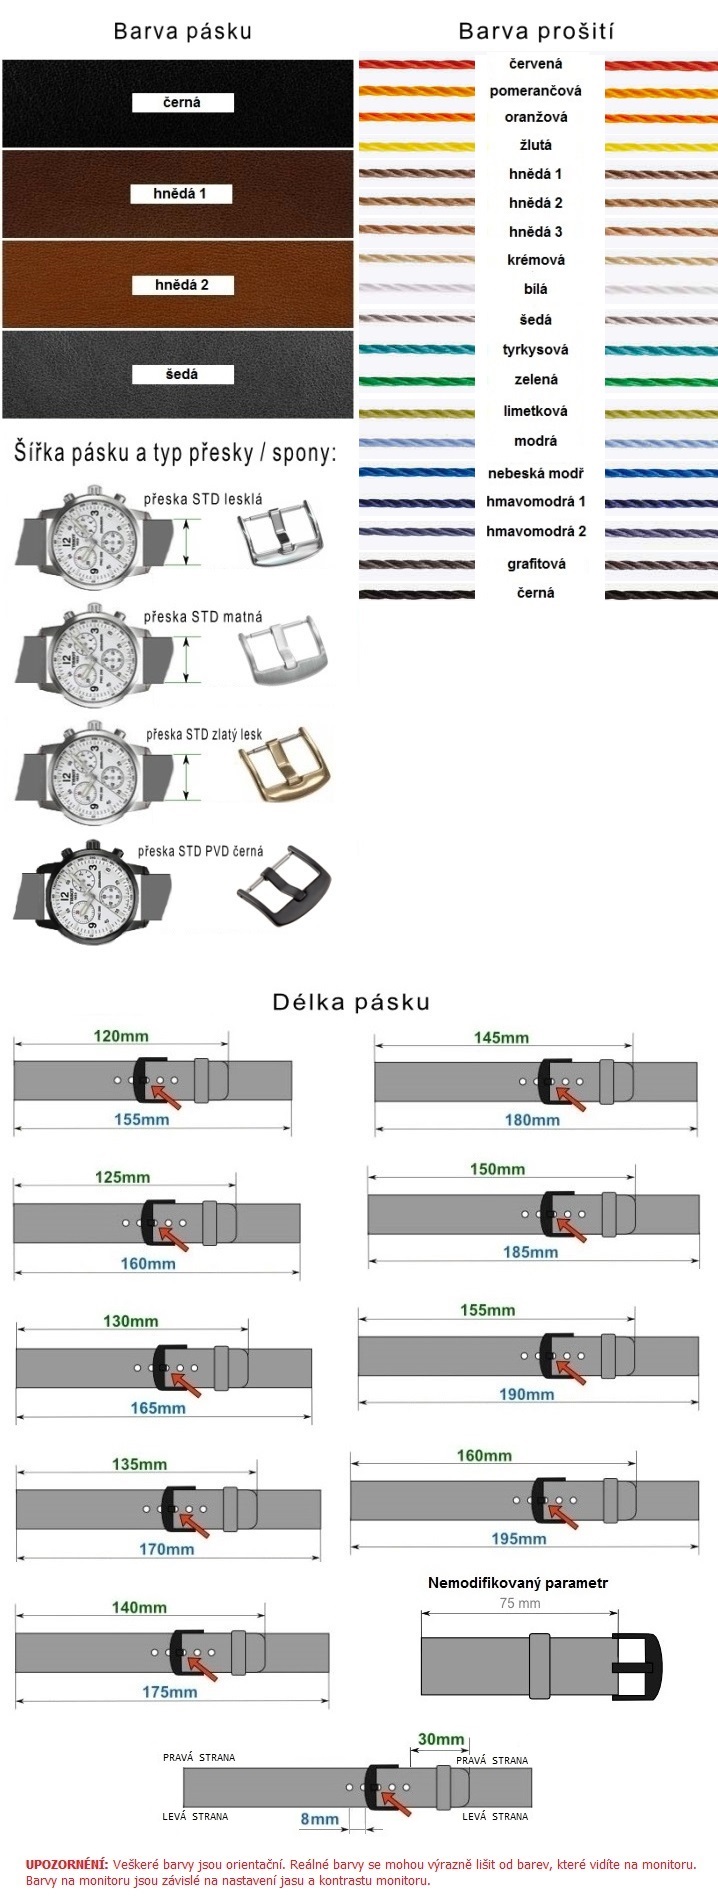 Kožený remienok na hodinky - modifikácie 13 - prešívaný | SHOPE.sk